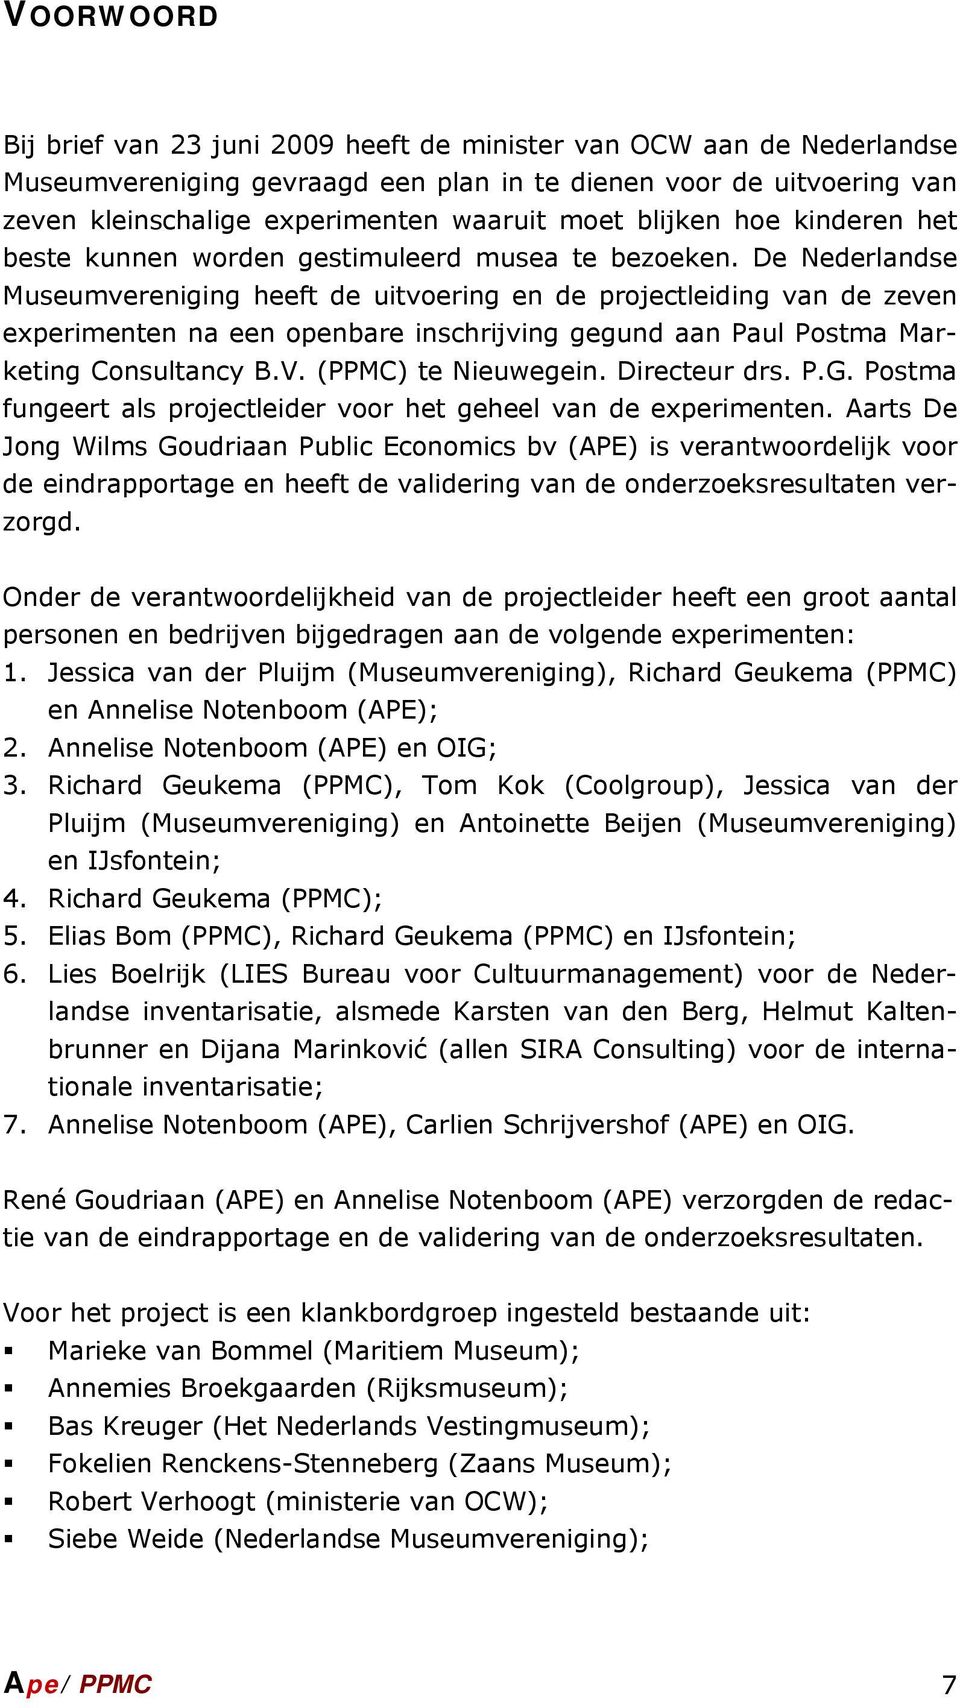 De Nederlandse Museumvereniging heeft de uitvoering en de projectleiding van de zeven experimenten na een openbare inschrijving gegund aan Paul Postma Marketing Consultancy B.V. (PPMC) te Nieuwegein.